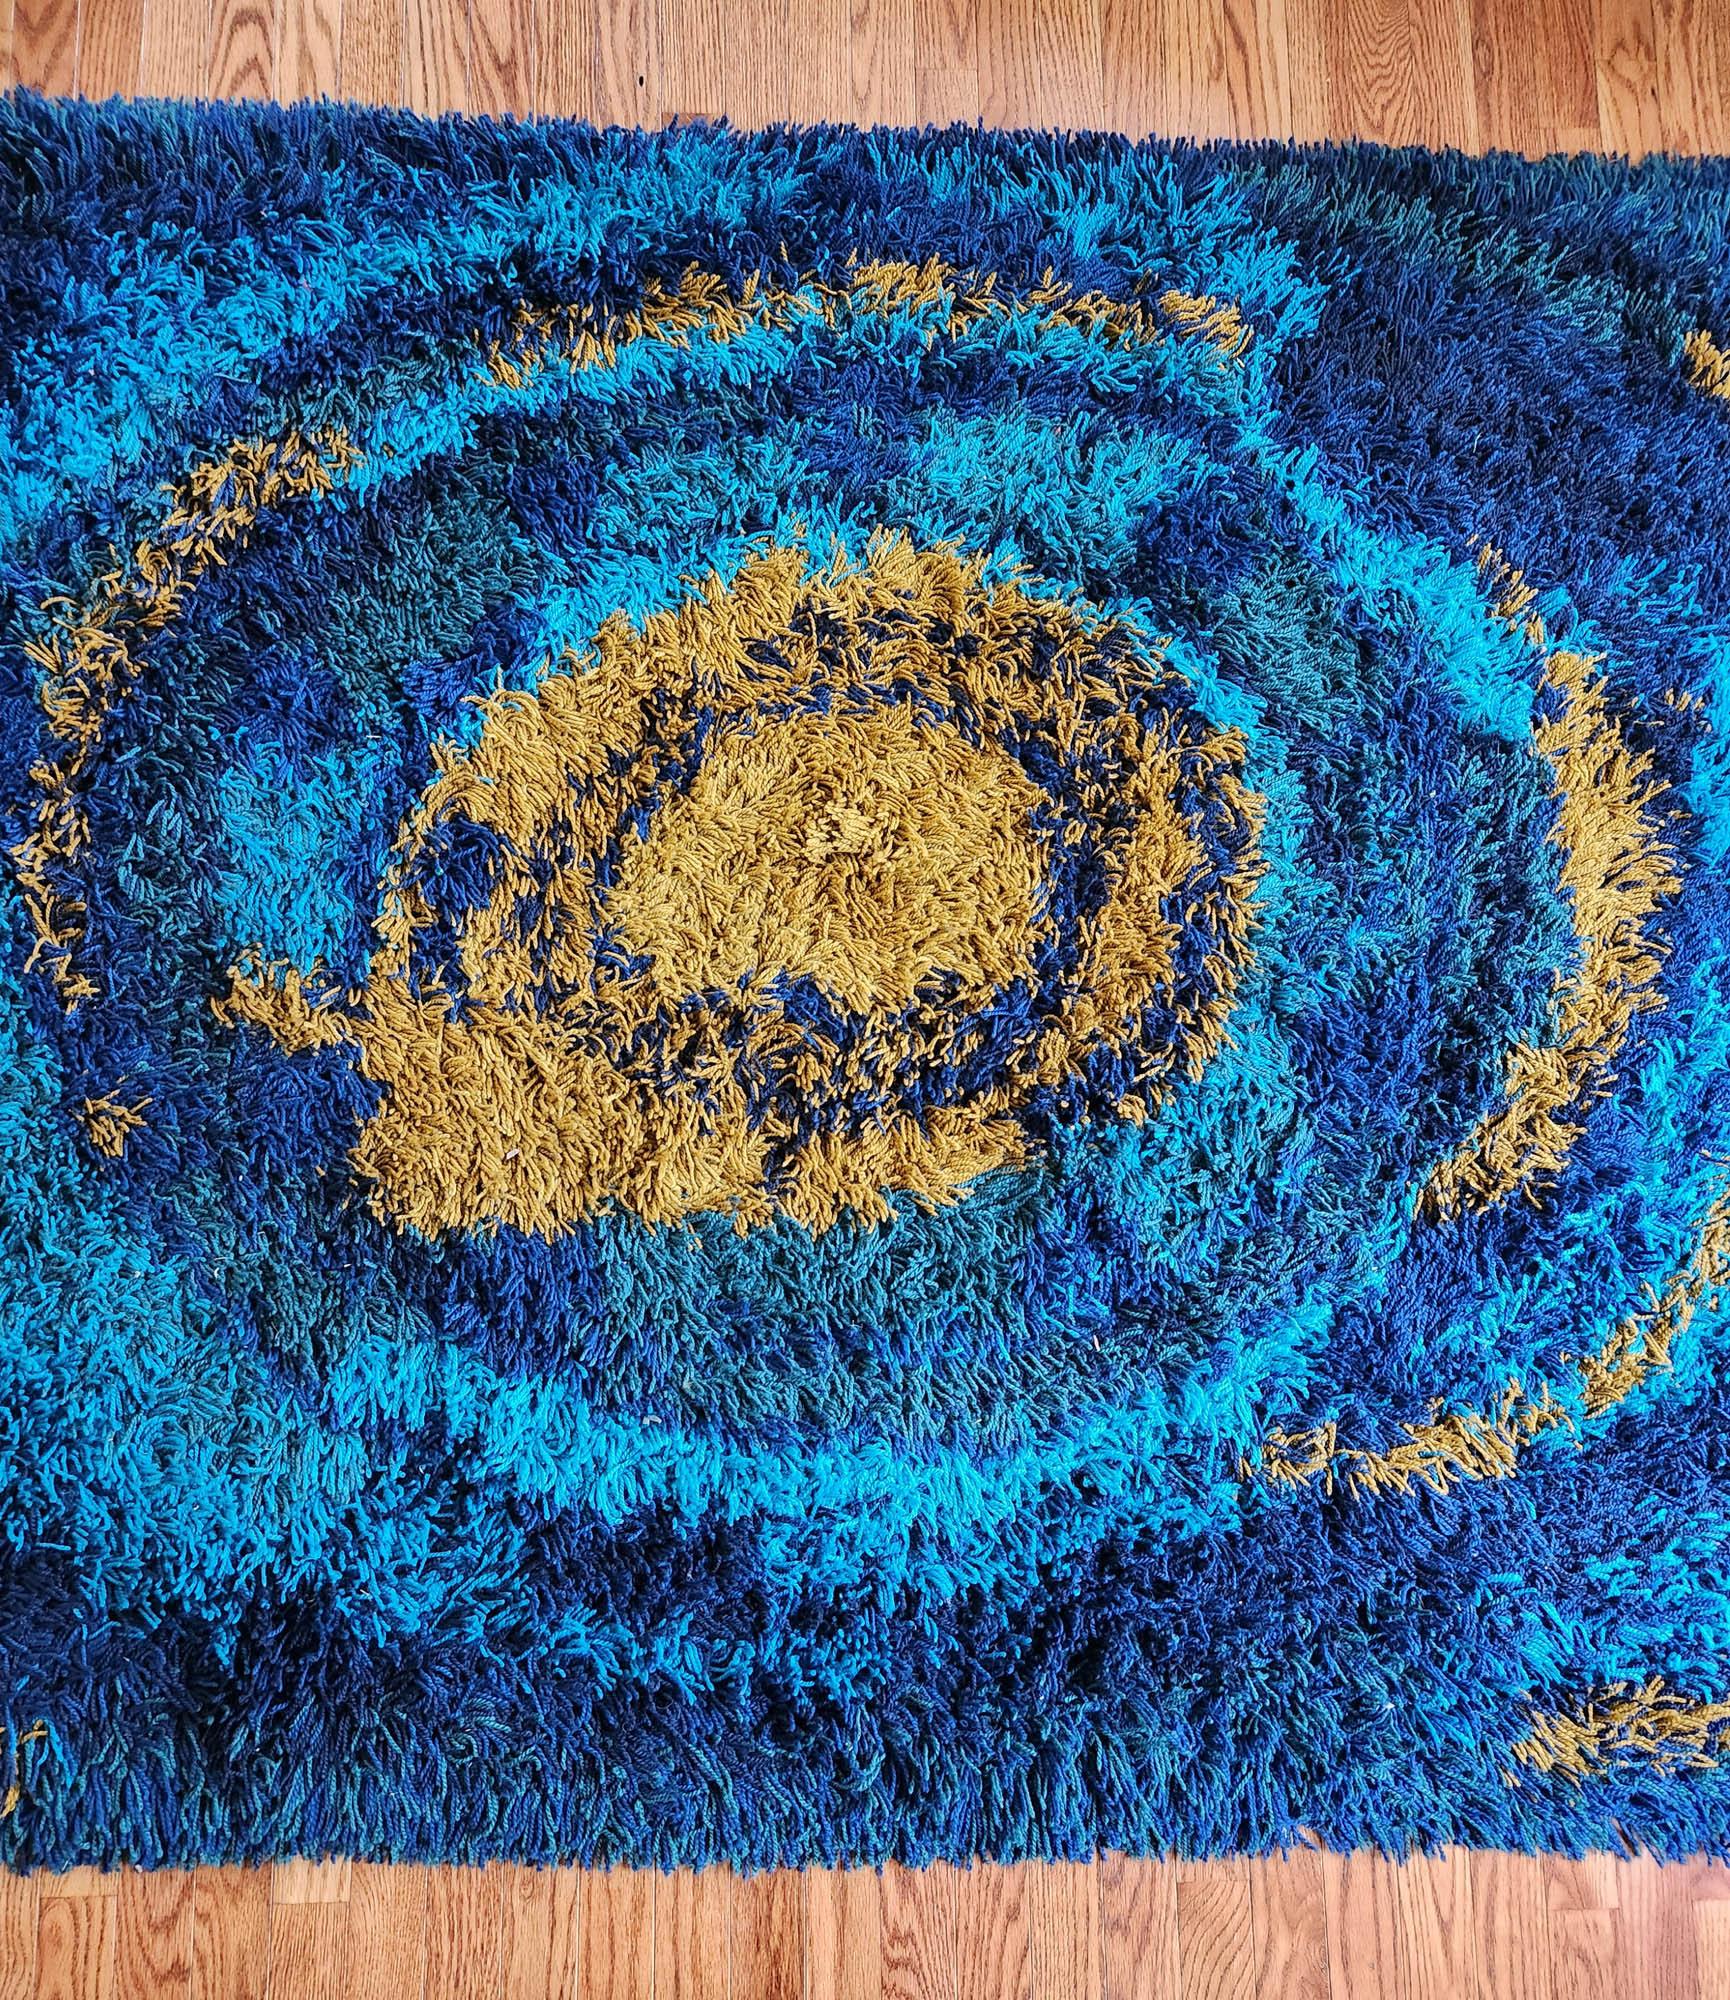 Ege Tæpper Sun Burst Tapis,
Ege Rya,
Fin des années 1960-début des années 1970

Le tapis en laine Ege Tæpper est un merveilleux exemple de ce design emblématique des tapis Modern Scandinavian.  Le tapis a un fond bleu intense avec un soleil central